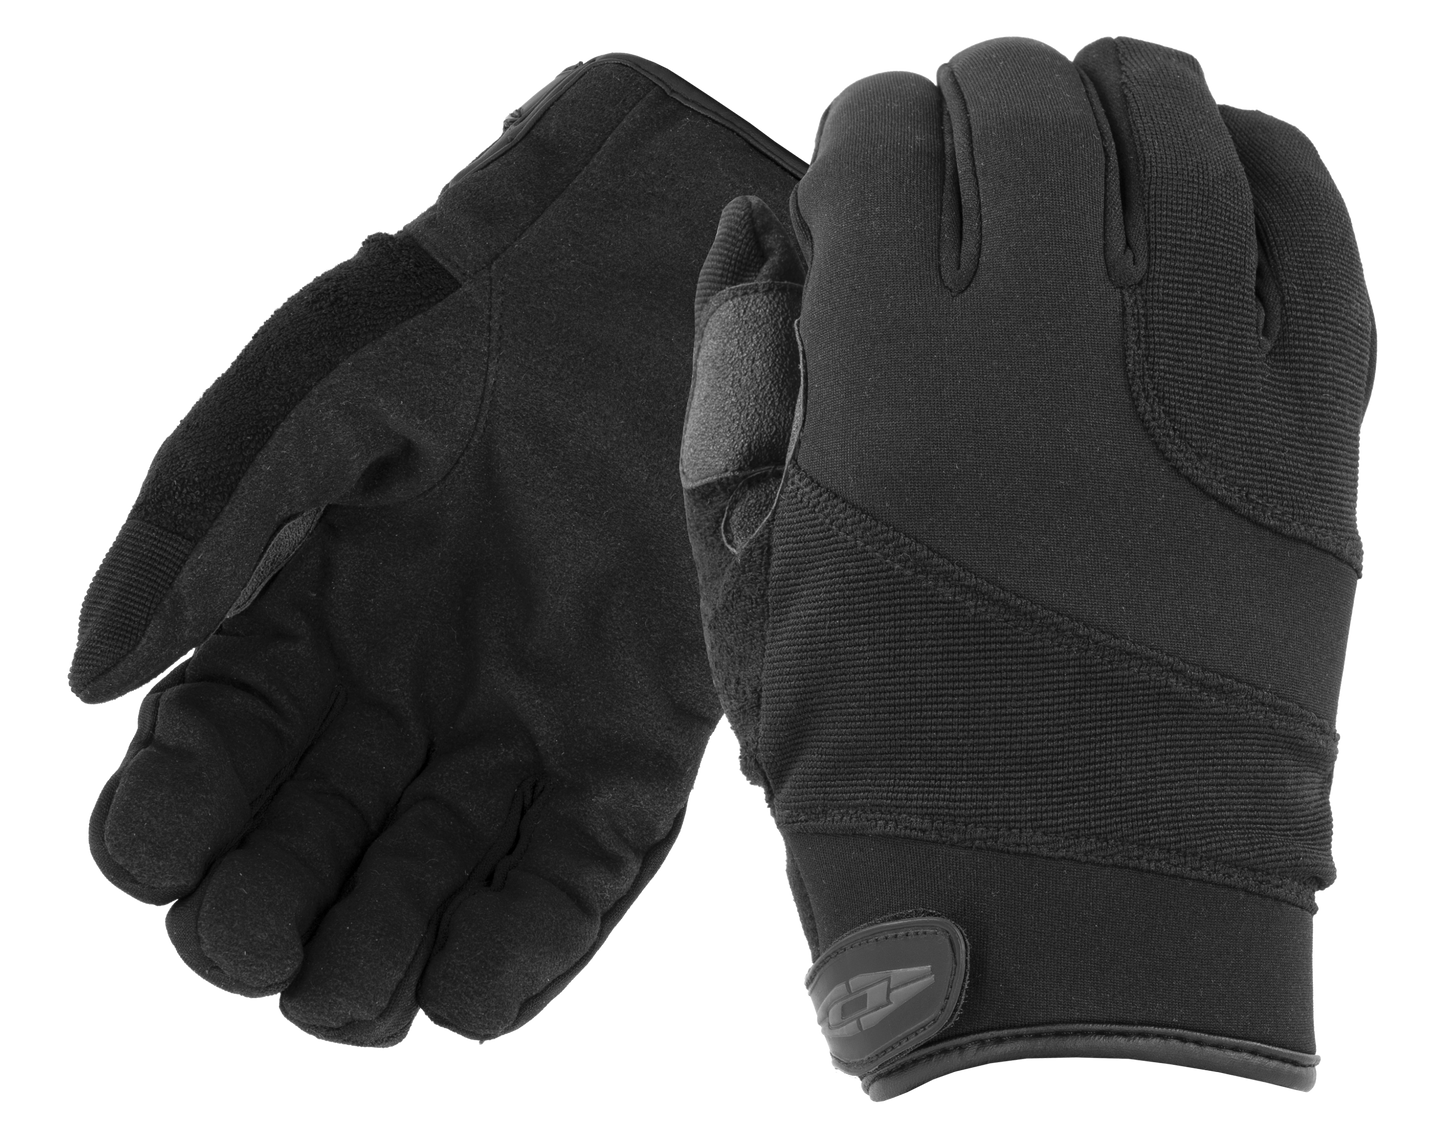 Patrol Guard Razornet Gloves